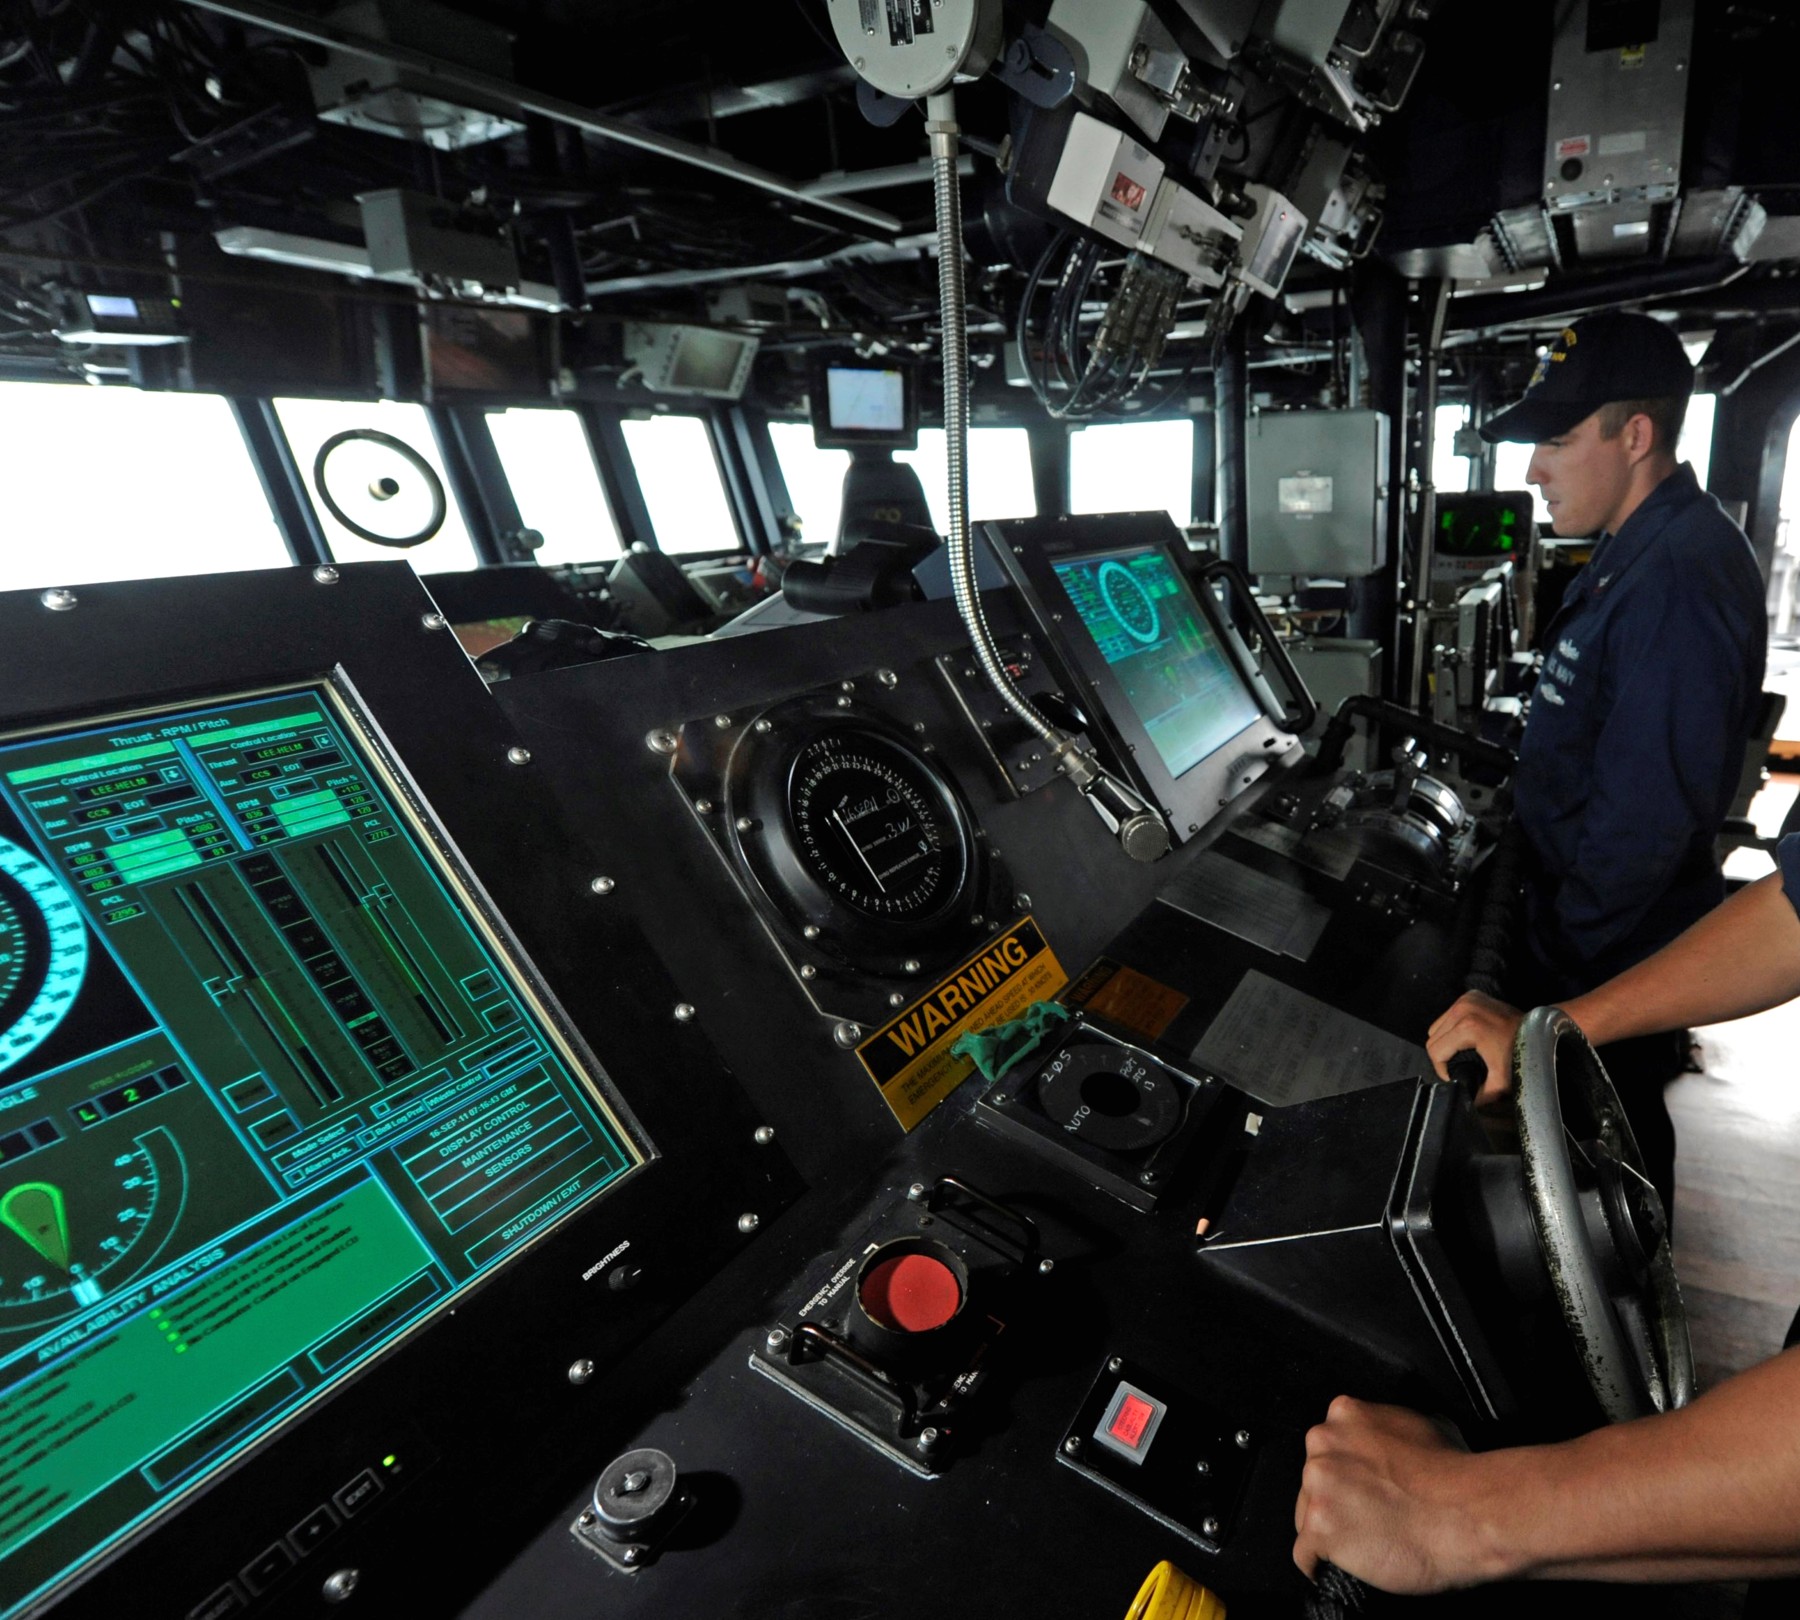 ddg-110 uss dewey arleigh burke class guided missile destroyer aegis us navy bridge helm steering 40